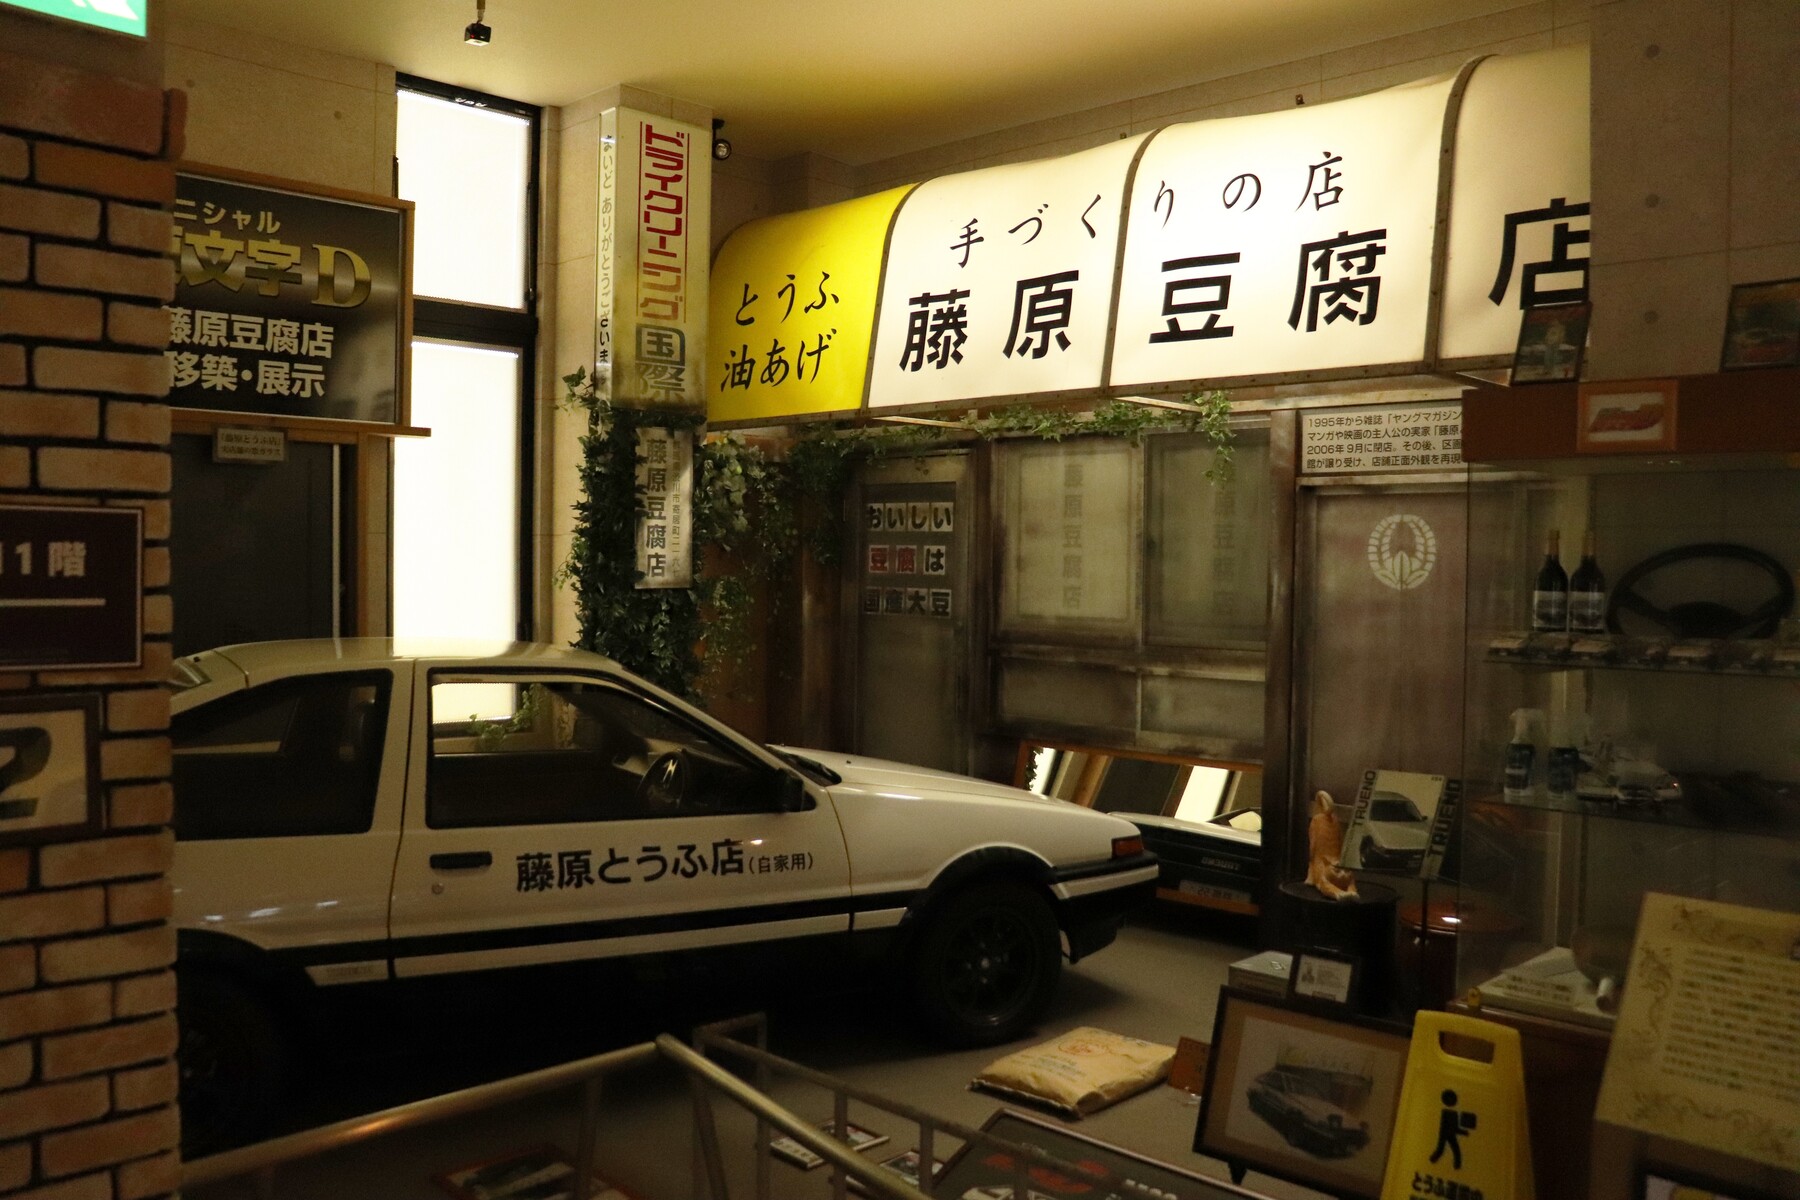 とうふ屋は3軒存在した 頭文字d 藤原豆腐店の謎 偶刊サトシオモータースblog